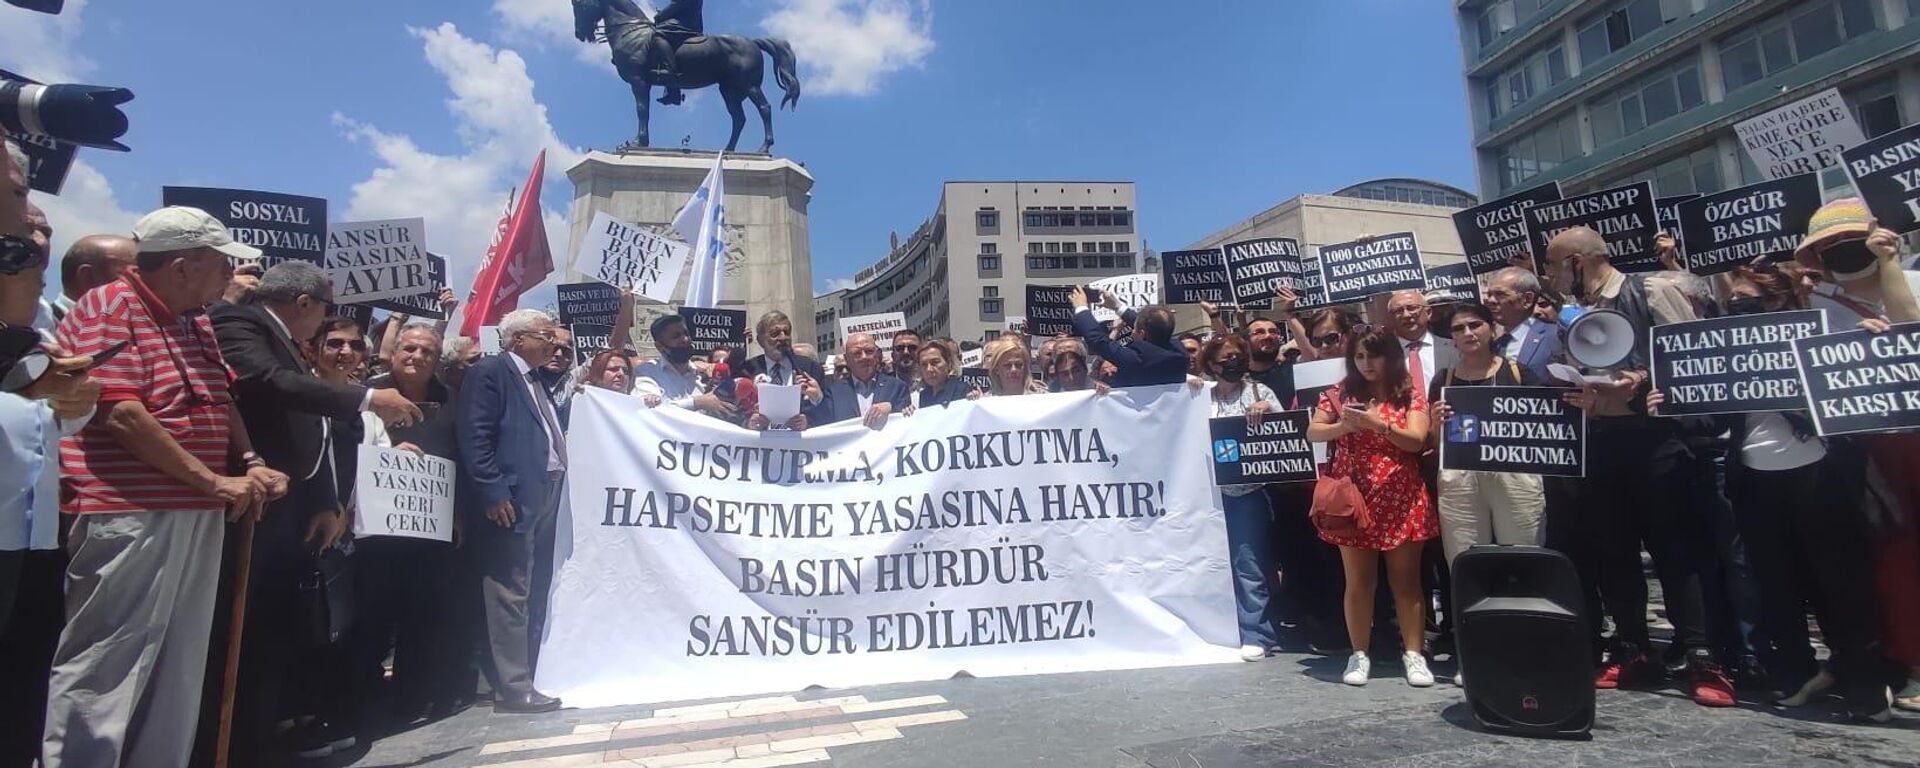 Gazeteci örgütleri ‘sosyal medya’ yasasına karşı meydanlara çıktı  - Sputnik Türkiye, 1920, 22.06.2022